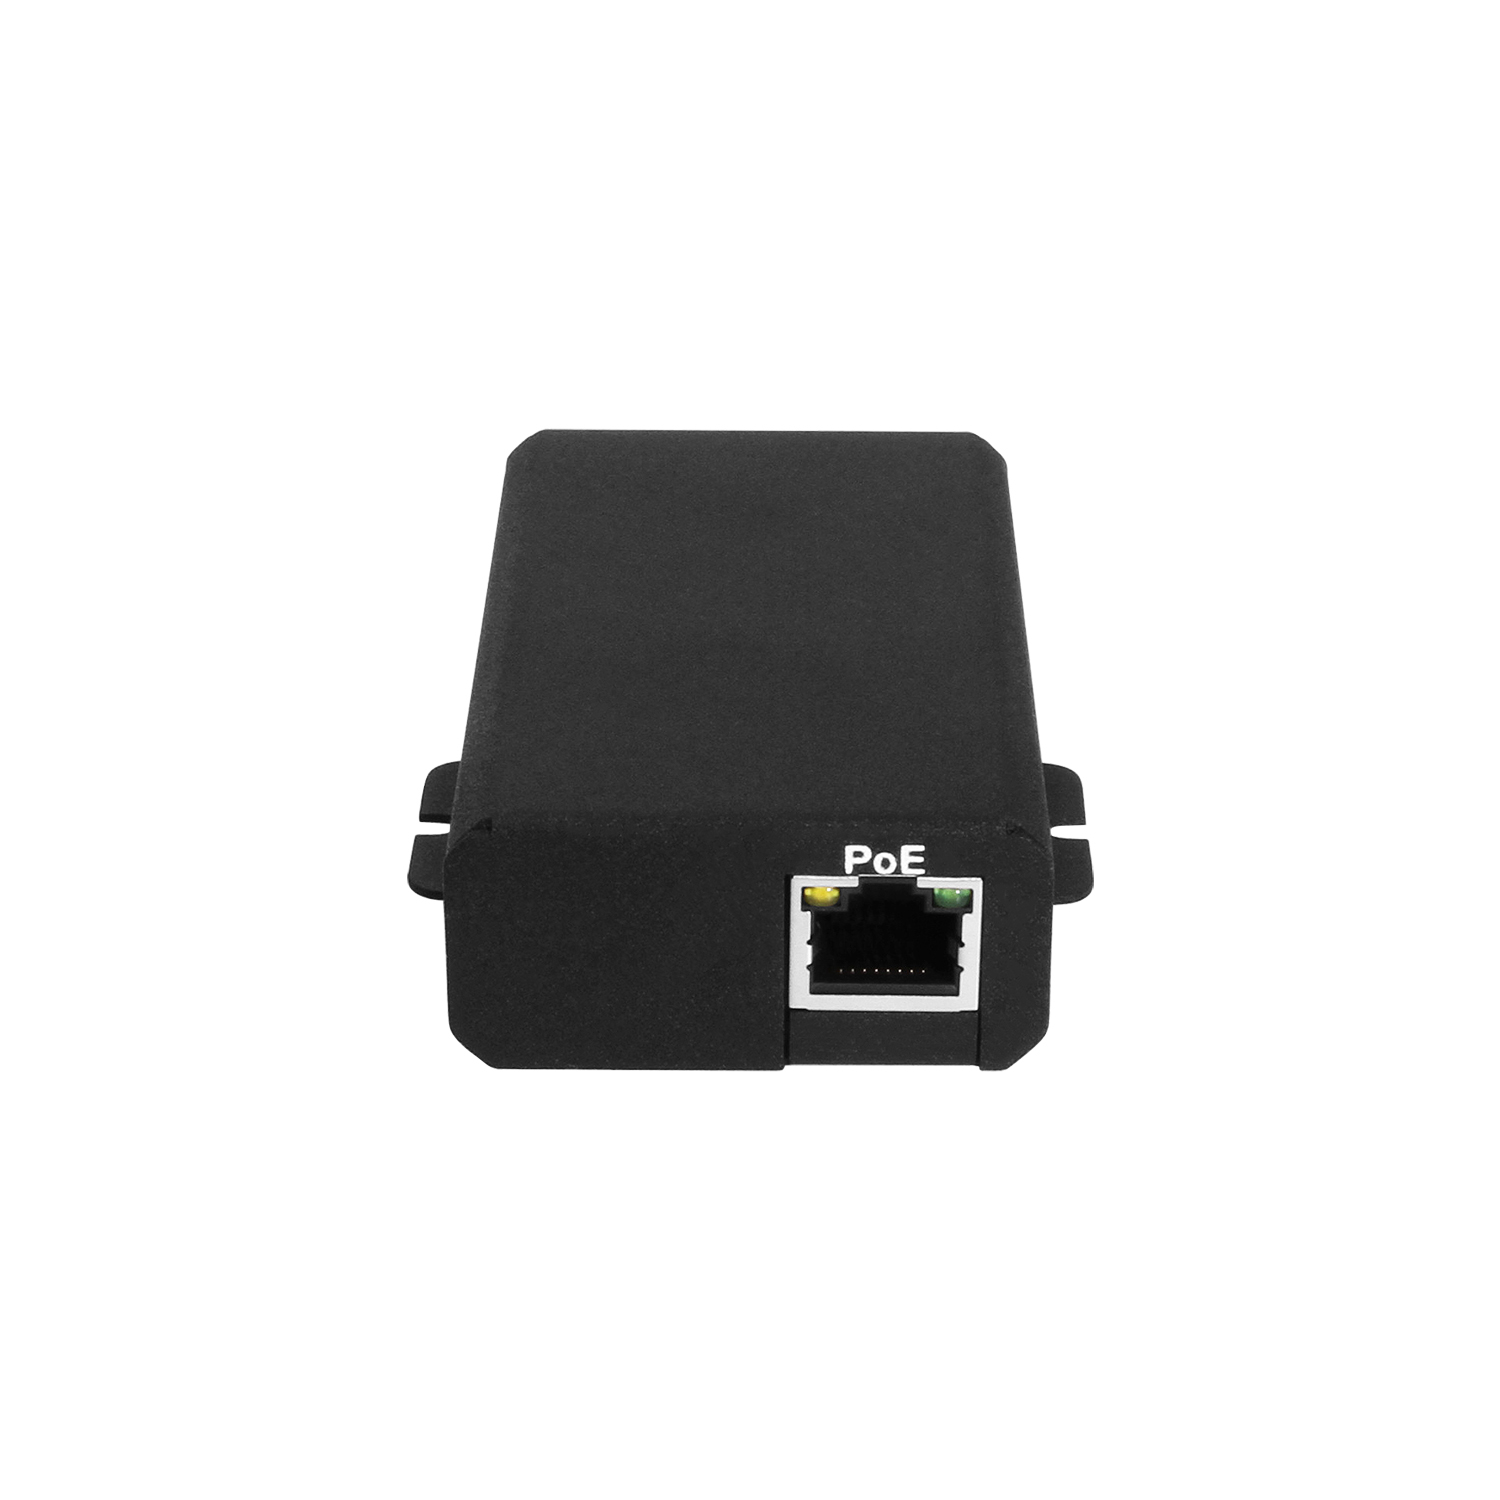 50watt PoE to TYPE C PD Power Adapter, 802.3 BT Compliant - Coolgear